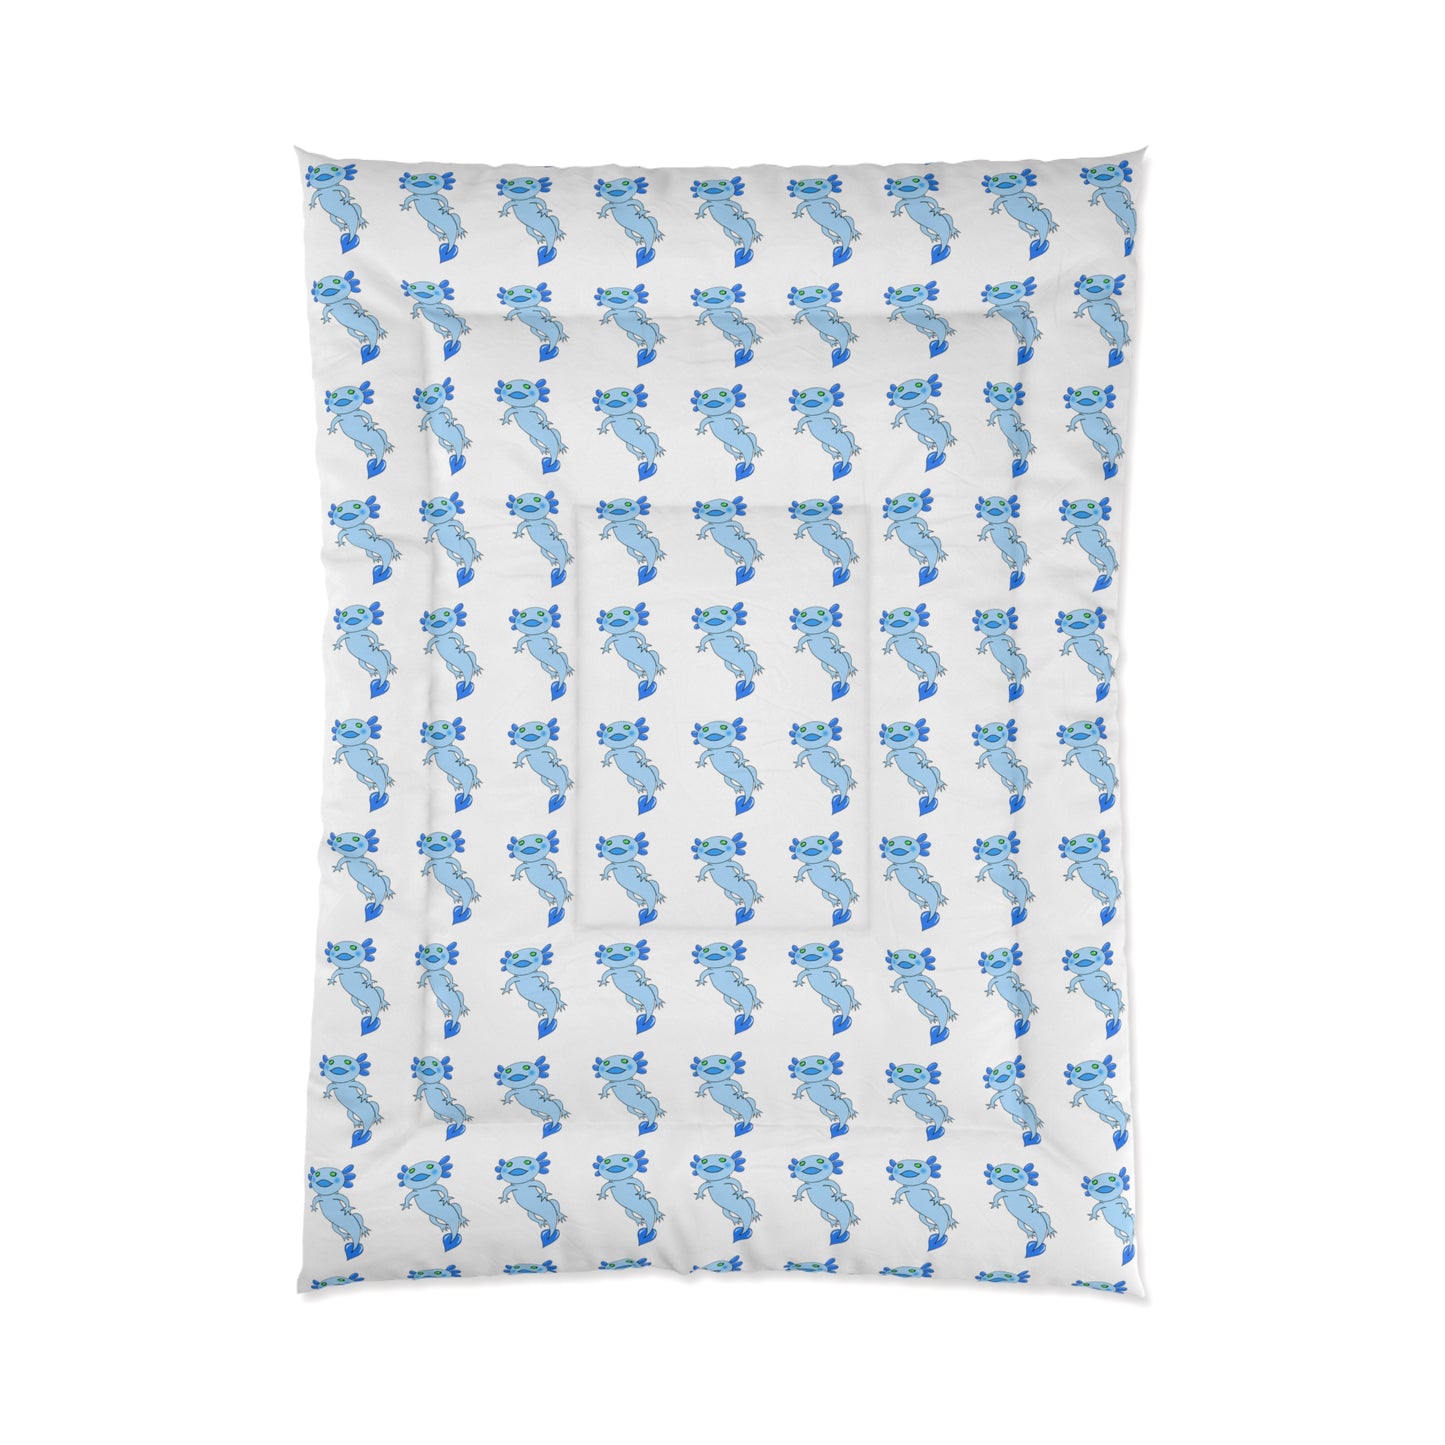 Blue Axolotl Comforter